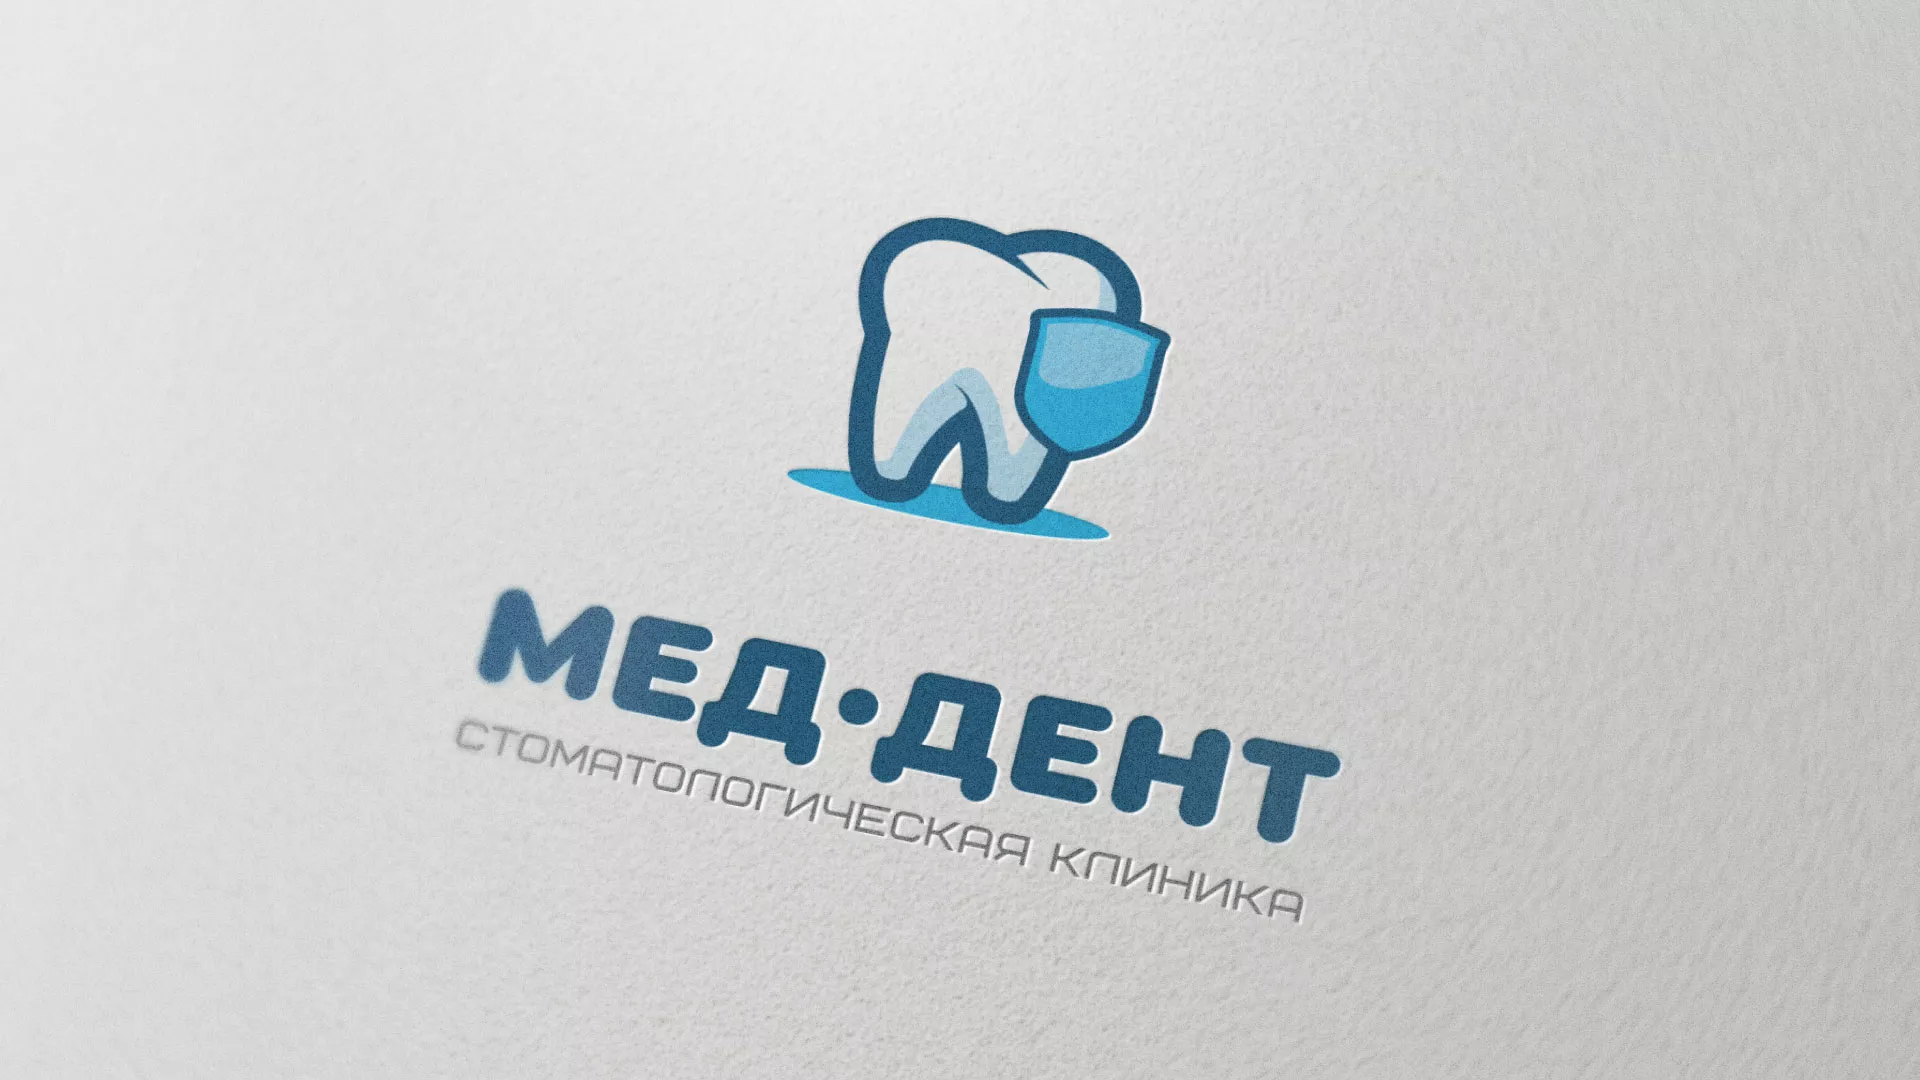 Разработка логотипа стоматологической клиники «МЕД-ДЕНТ» в Мариинском Посаде